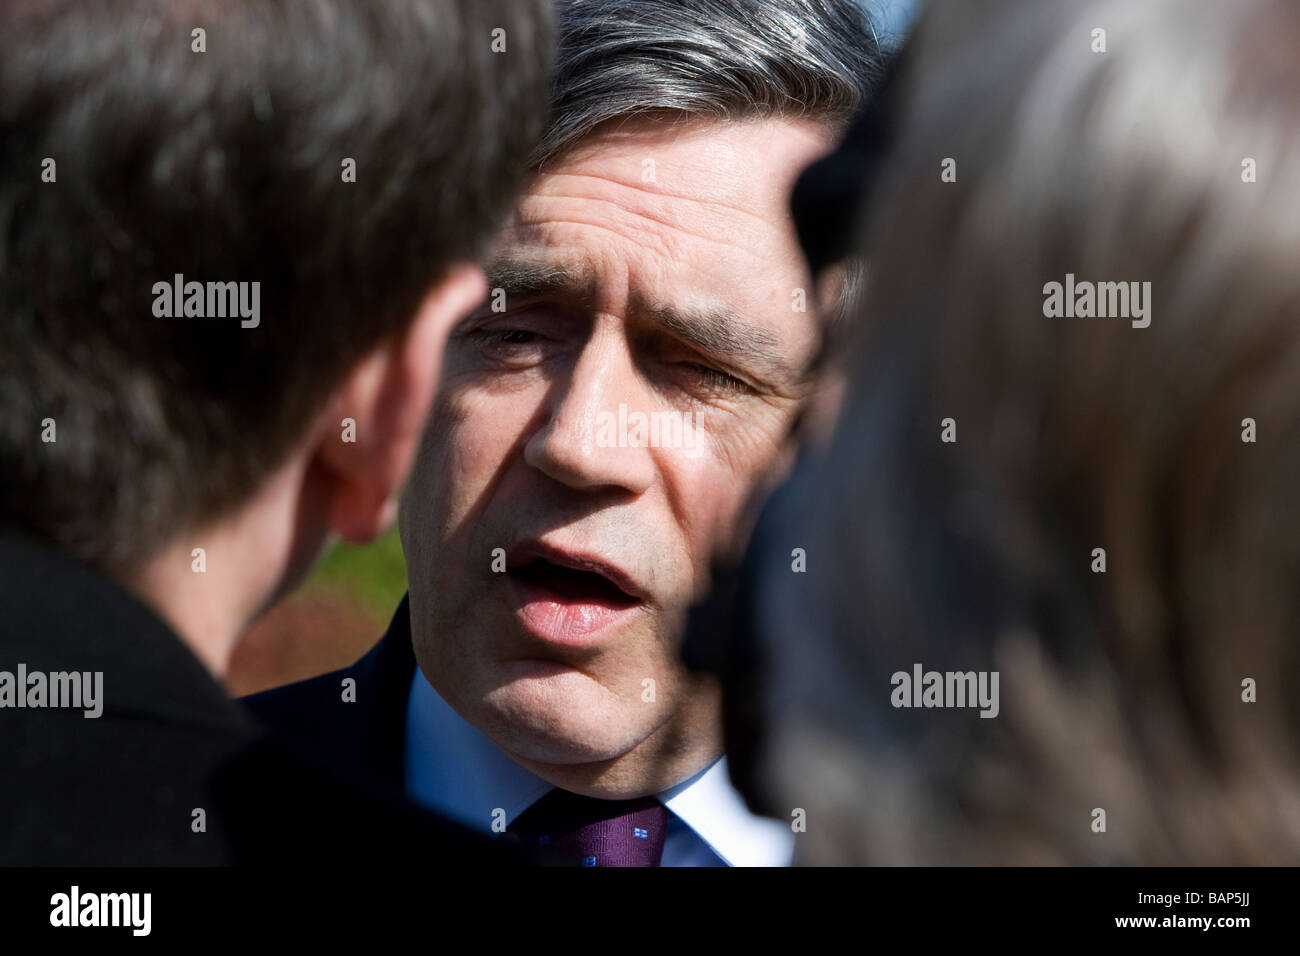 Gordon Brown MP il Primo Ministro ed ex Cancelliere dello Scacchiere nel lavoro del governo britannico Foto Stock